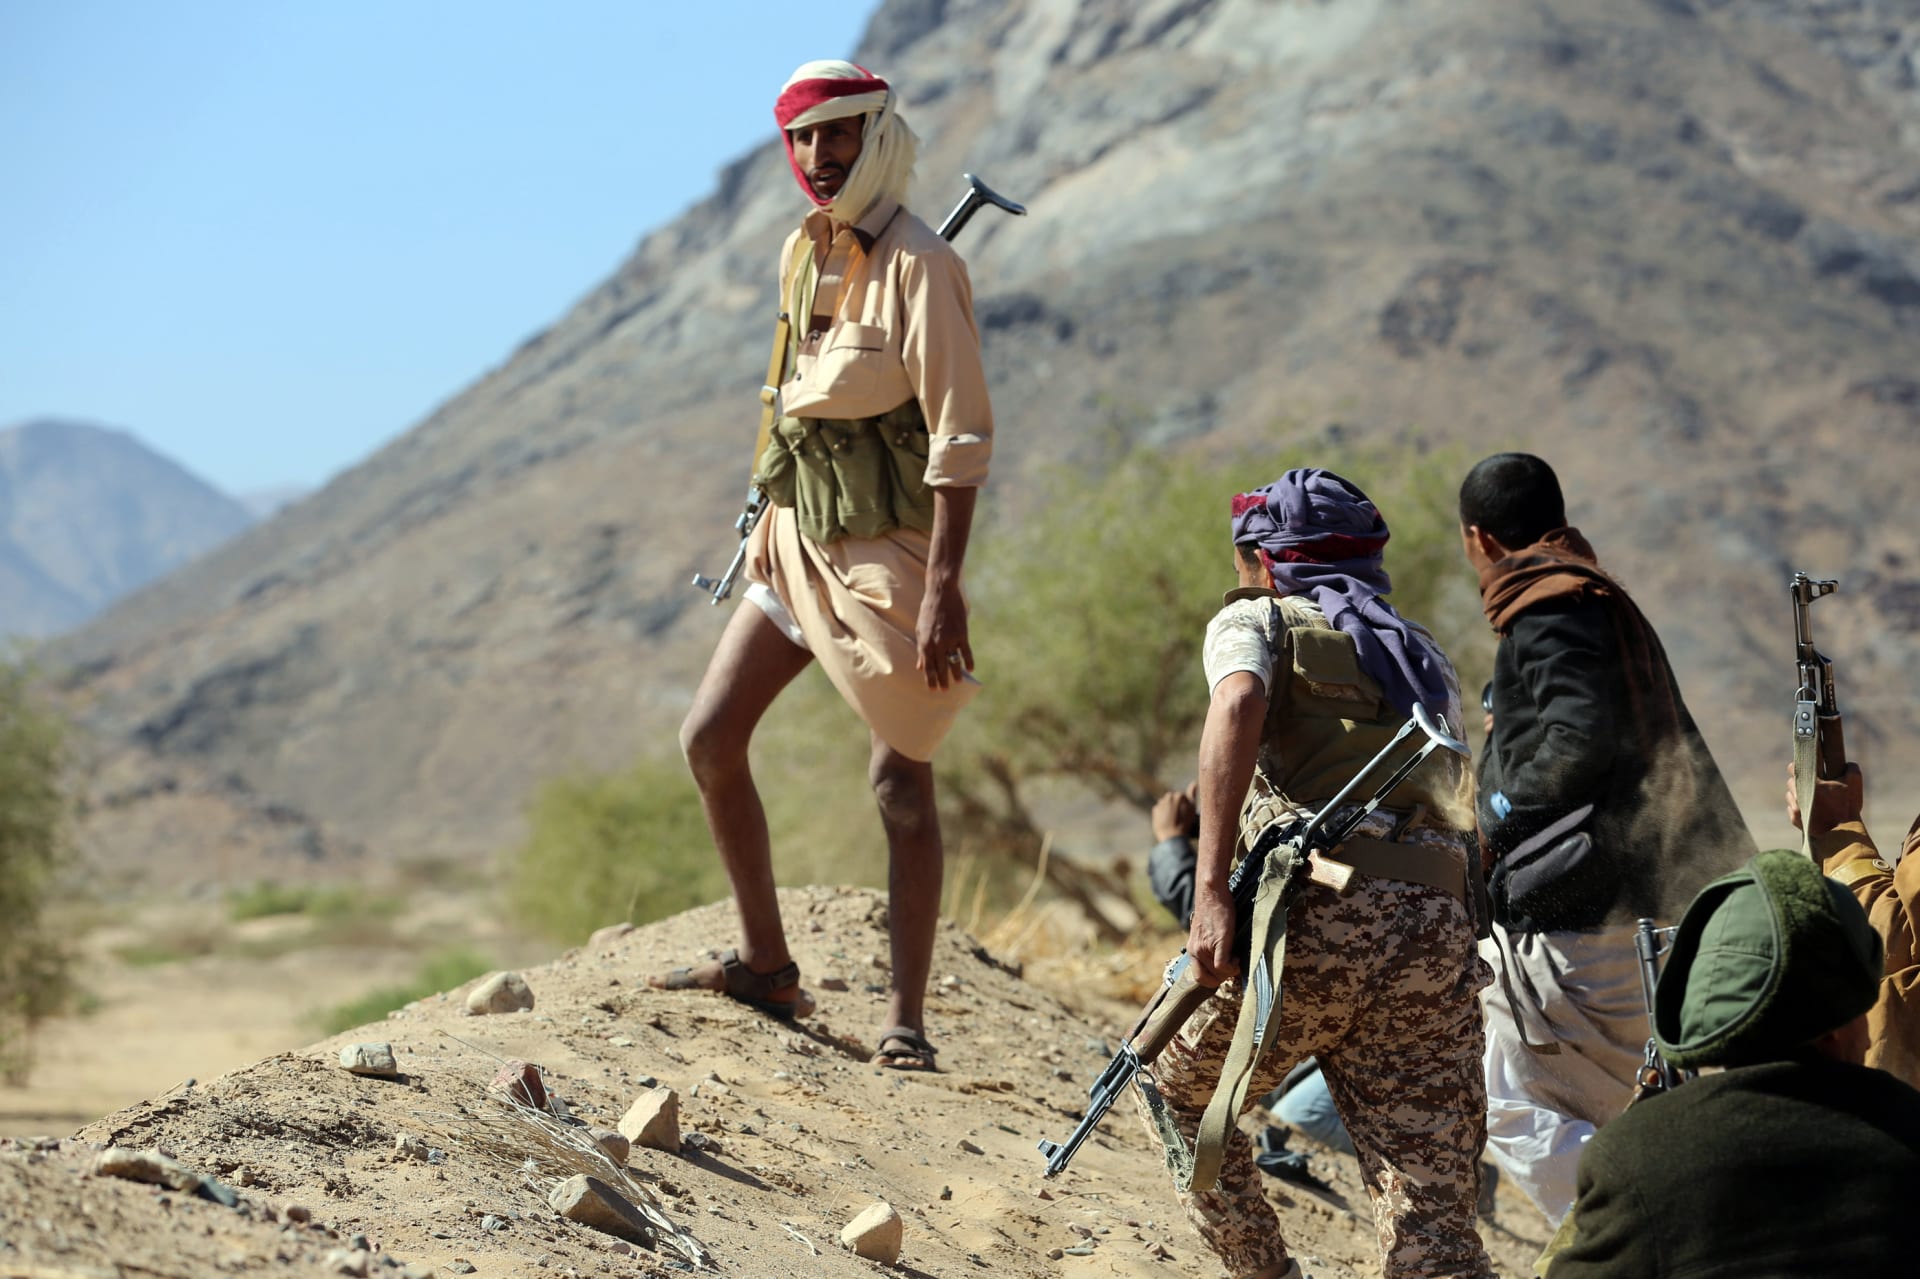 العقيد المالكي: الحوثيون قتلوا صالح بأوامر إيرانية بعد فضحه للمشروع الفارسي